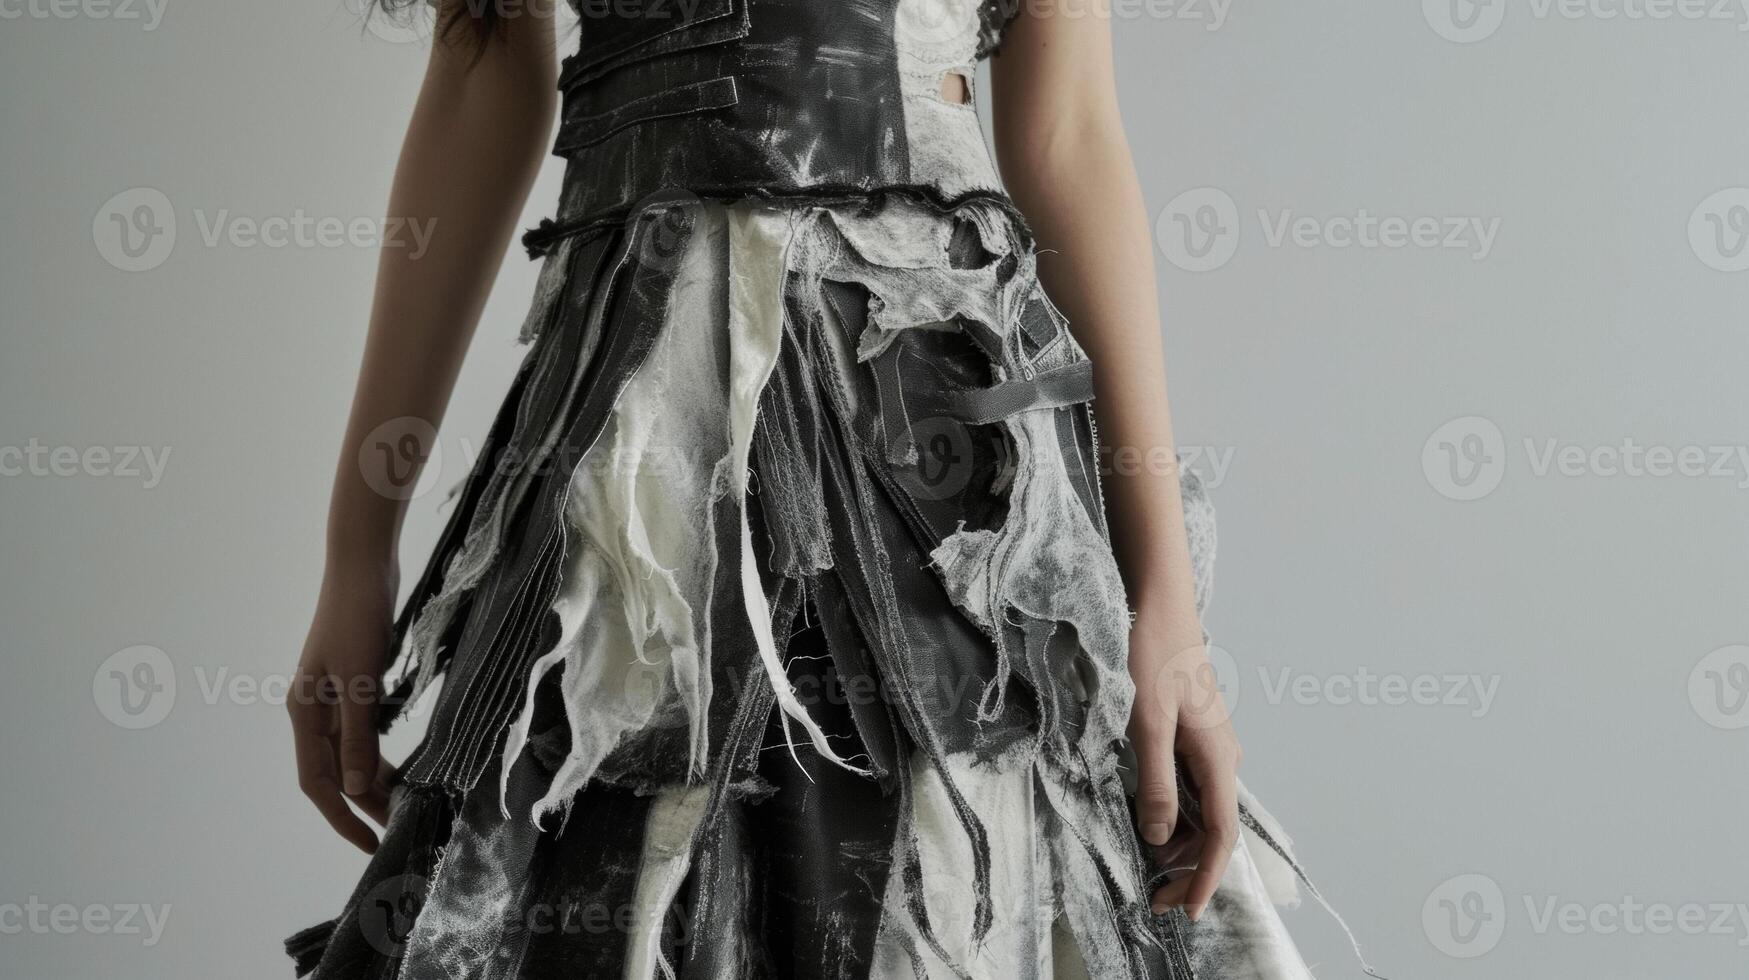 ein Avantgarde Kleid mit strukturiert Paneele und ausgefranst Kanten inspiriert durch das abstrakt und unkonventionell Designs von ein futuristisch Kunst Ausstellungsstück foto